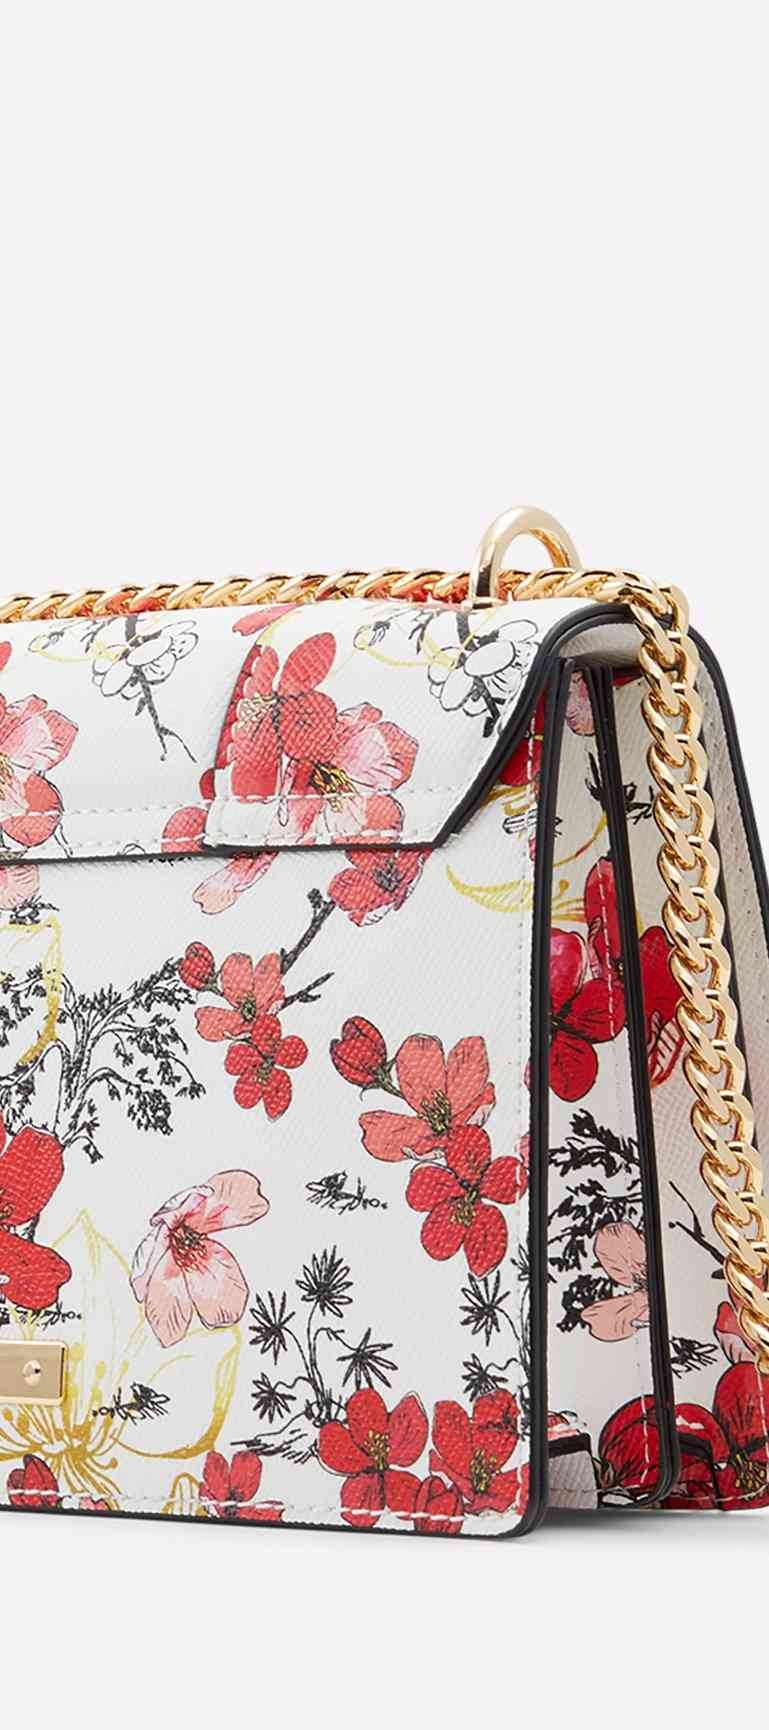 Aldo Women's Handbag (Medium Red) : Amazon.in: Fashion